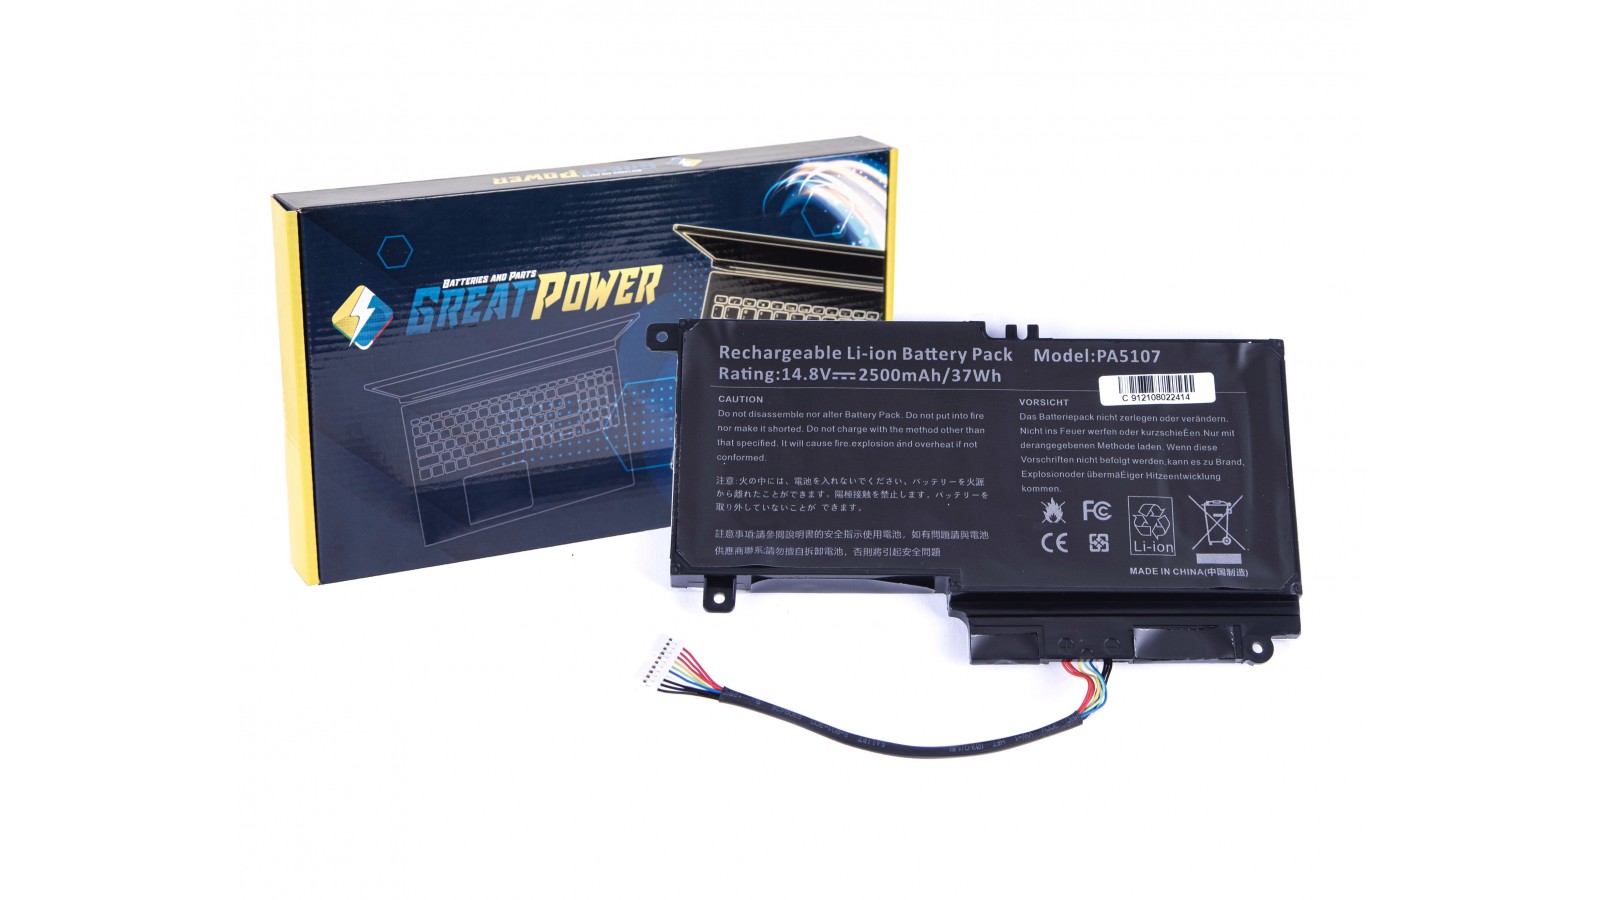 Batteria compatibile con Toshiba L55-A5226, L55Dt-A5253, L55-A5234